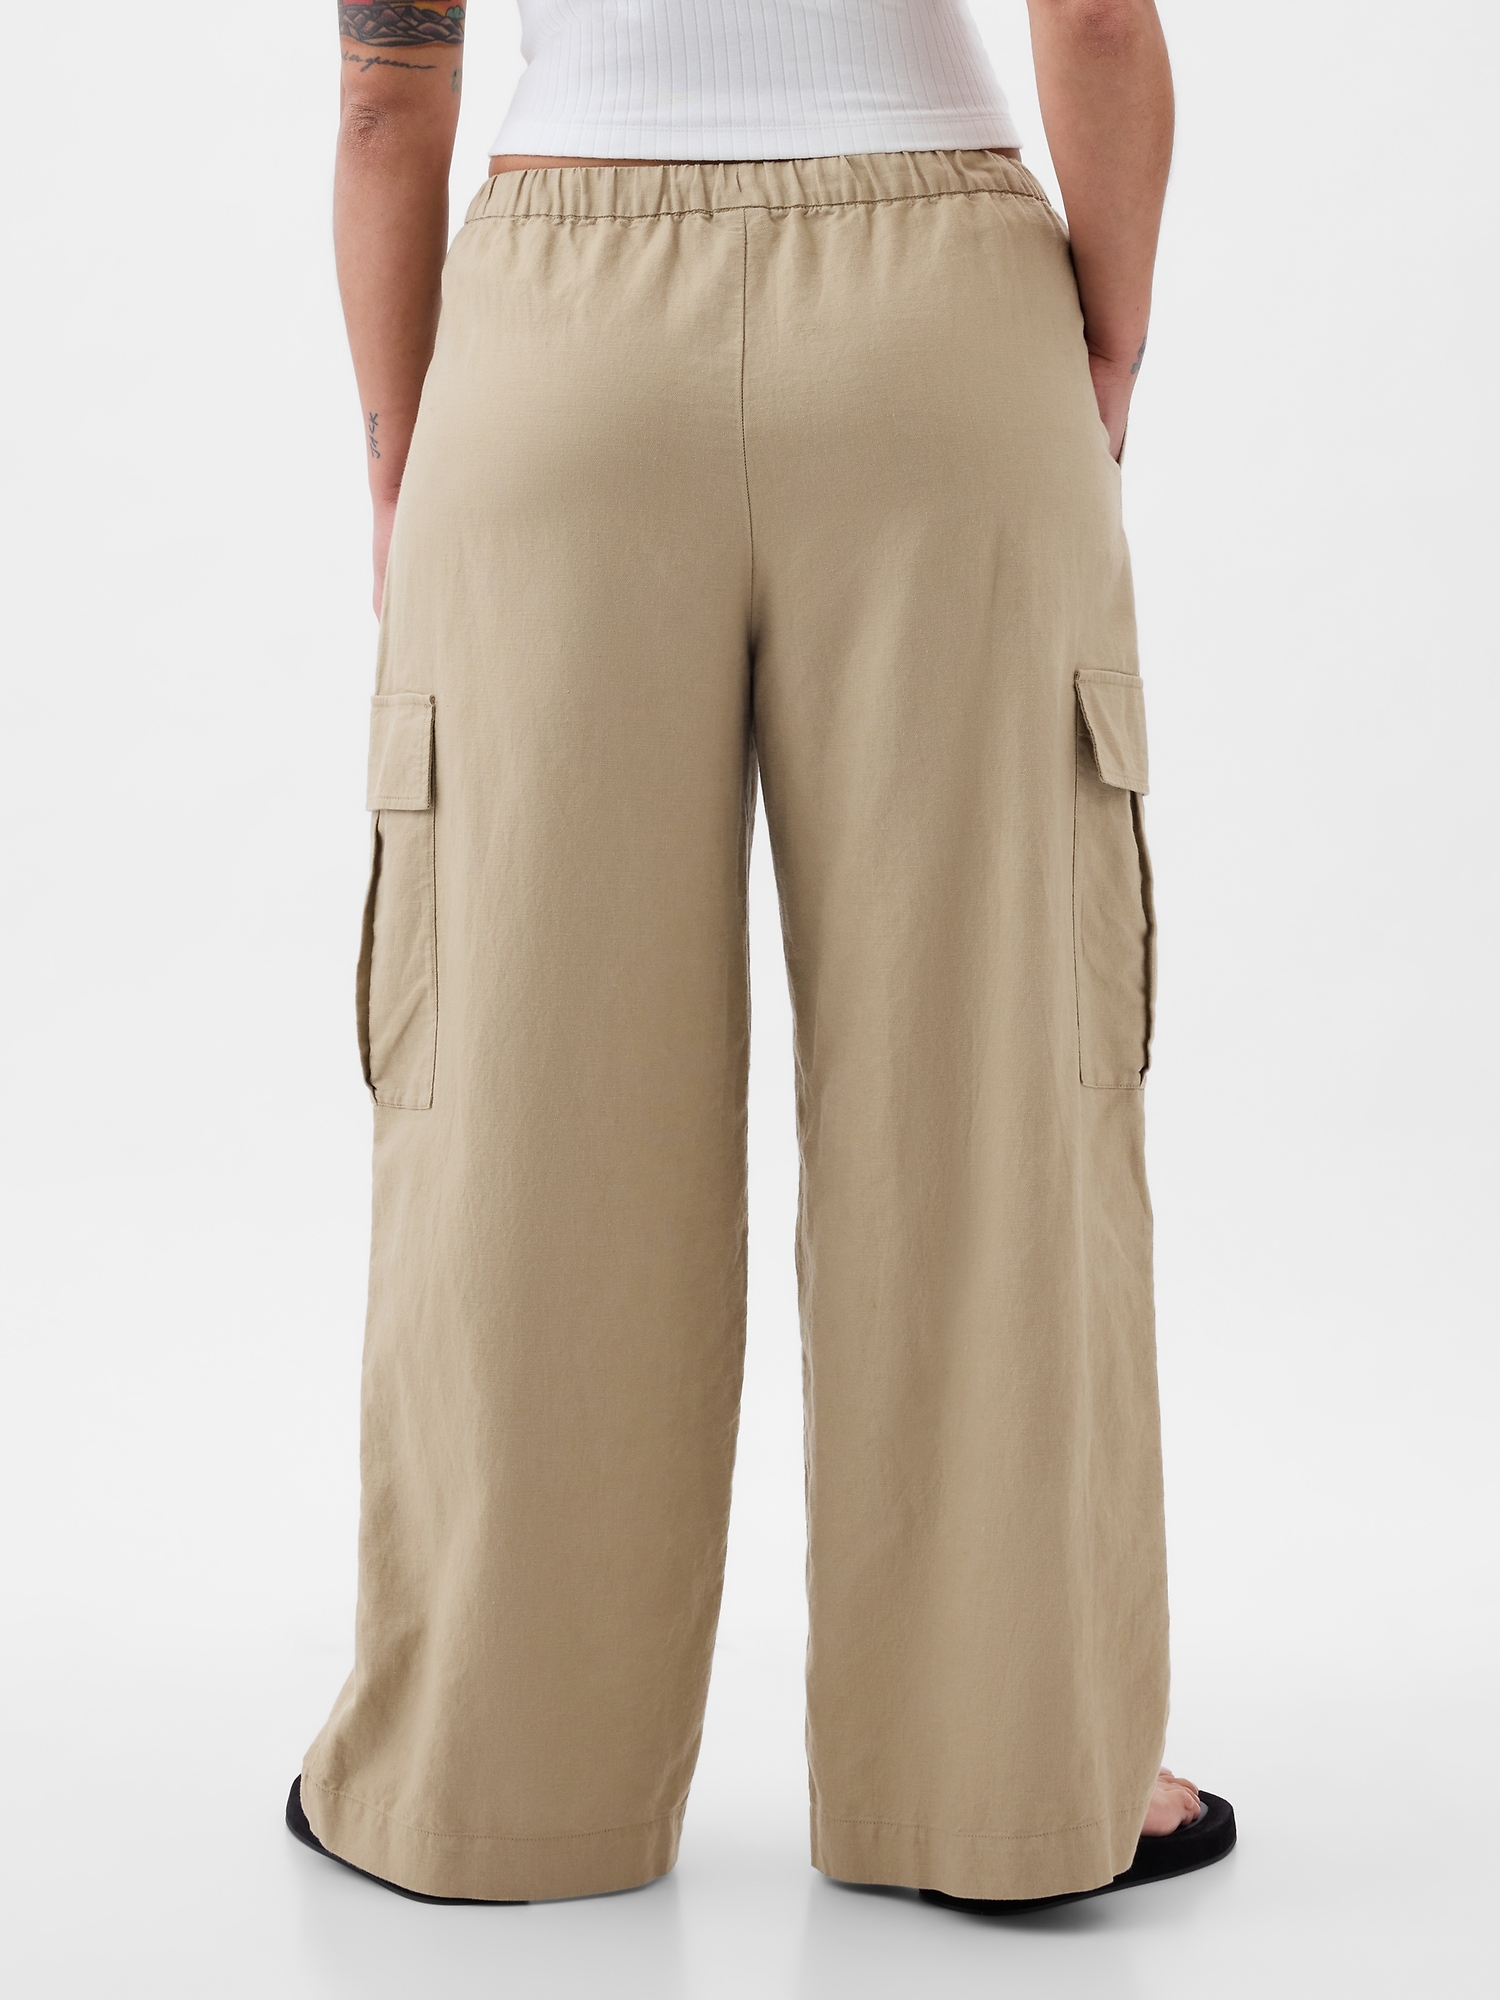 BFAFEN Cargo Pants Women Plus Size Cotton Linen Casual Pants